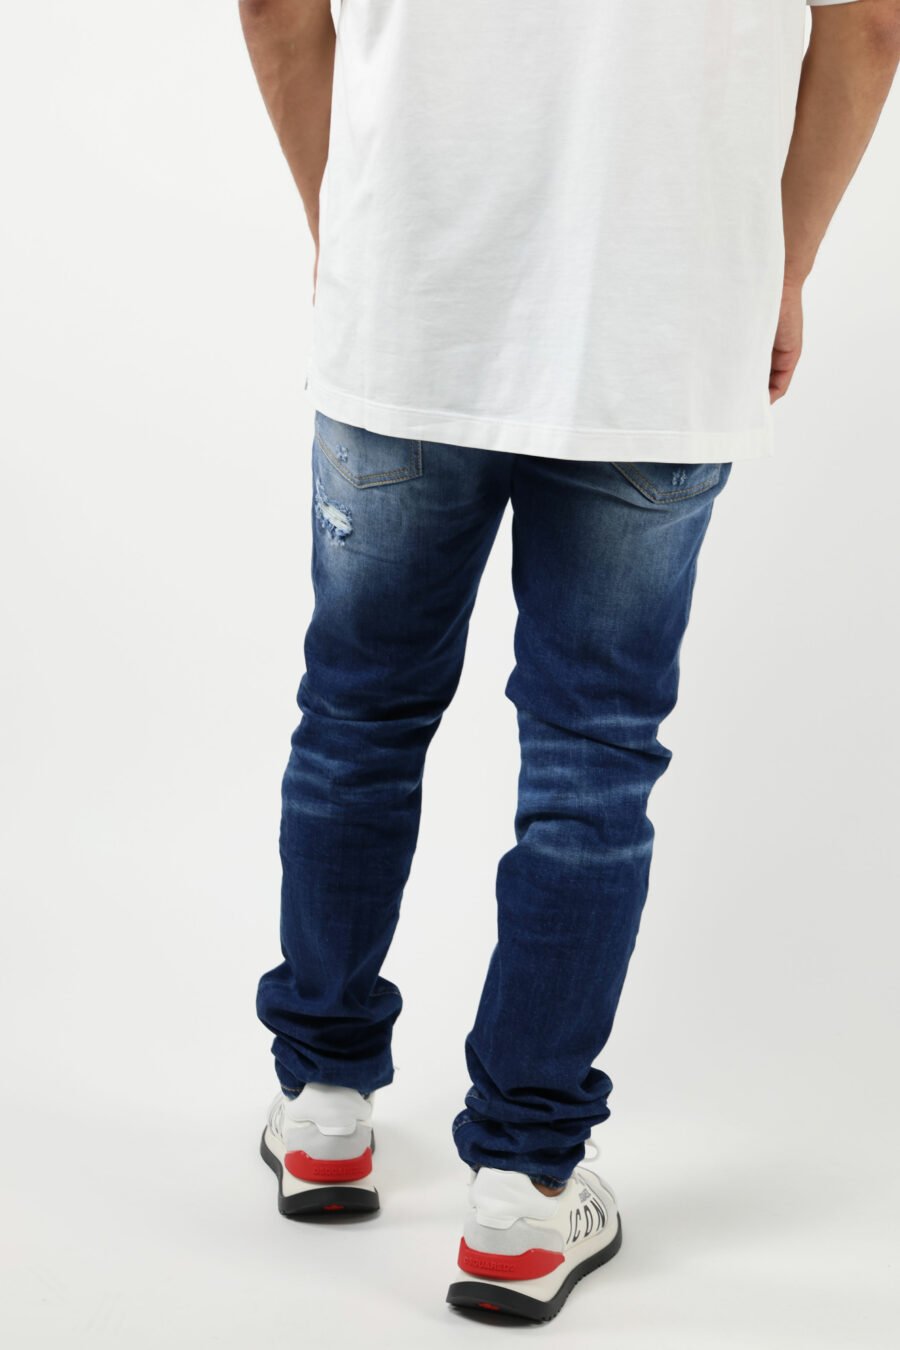 Pantalón vaquero azul claro "cool guy" con efecto lavado y rotos - 8054148339203 3